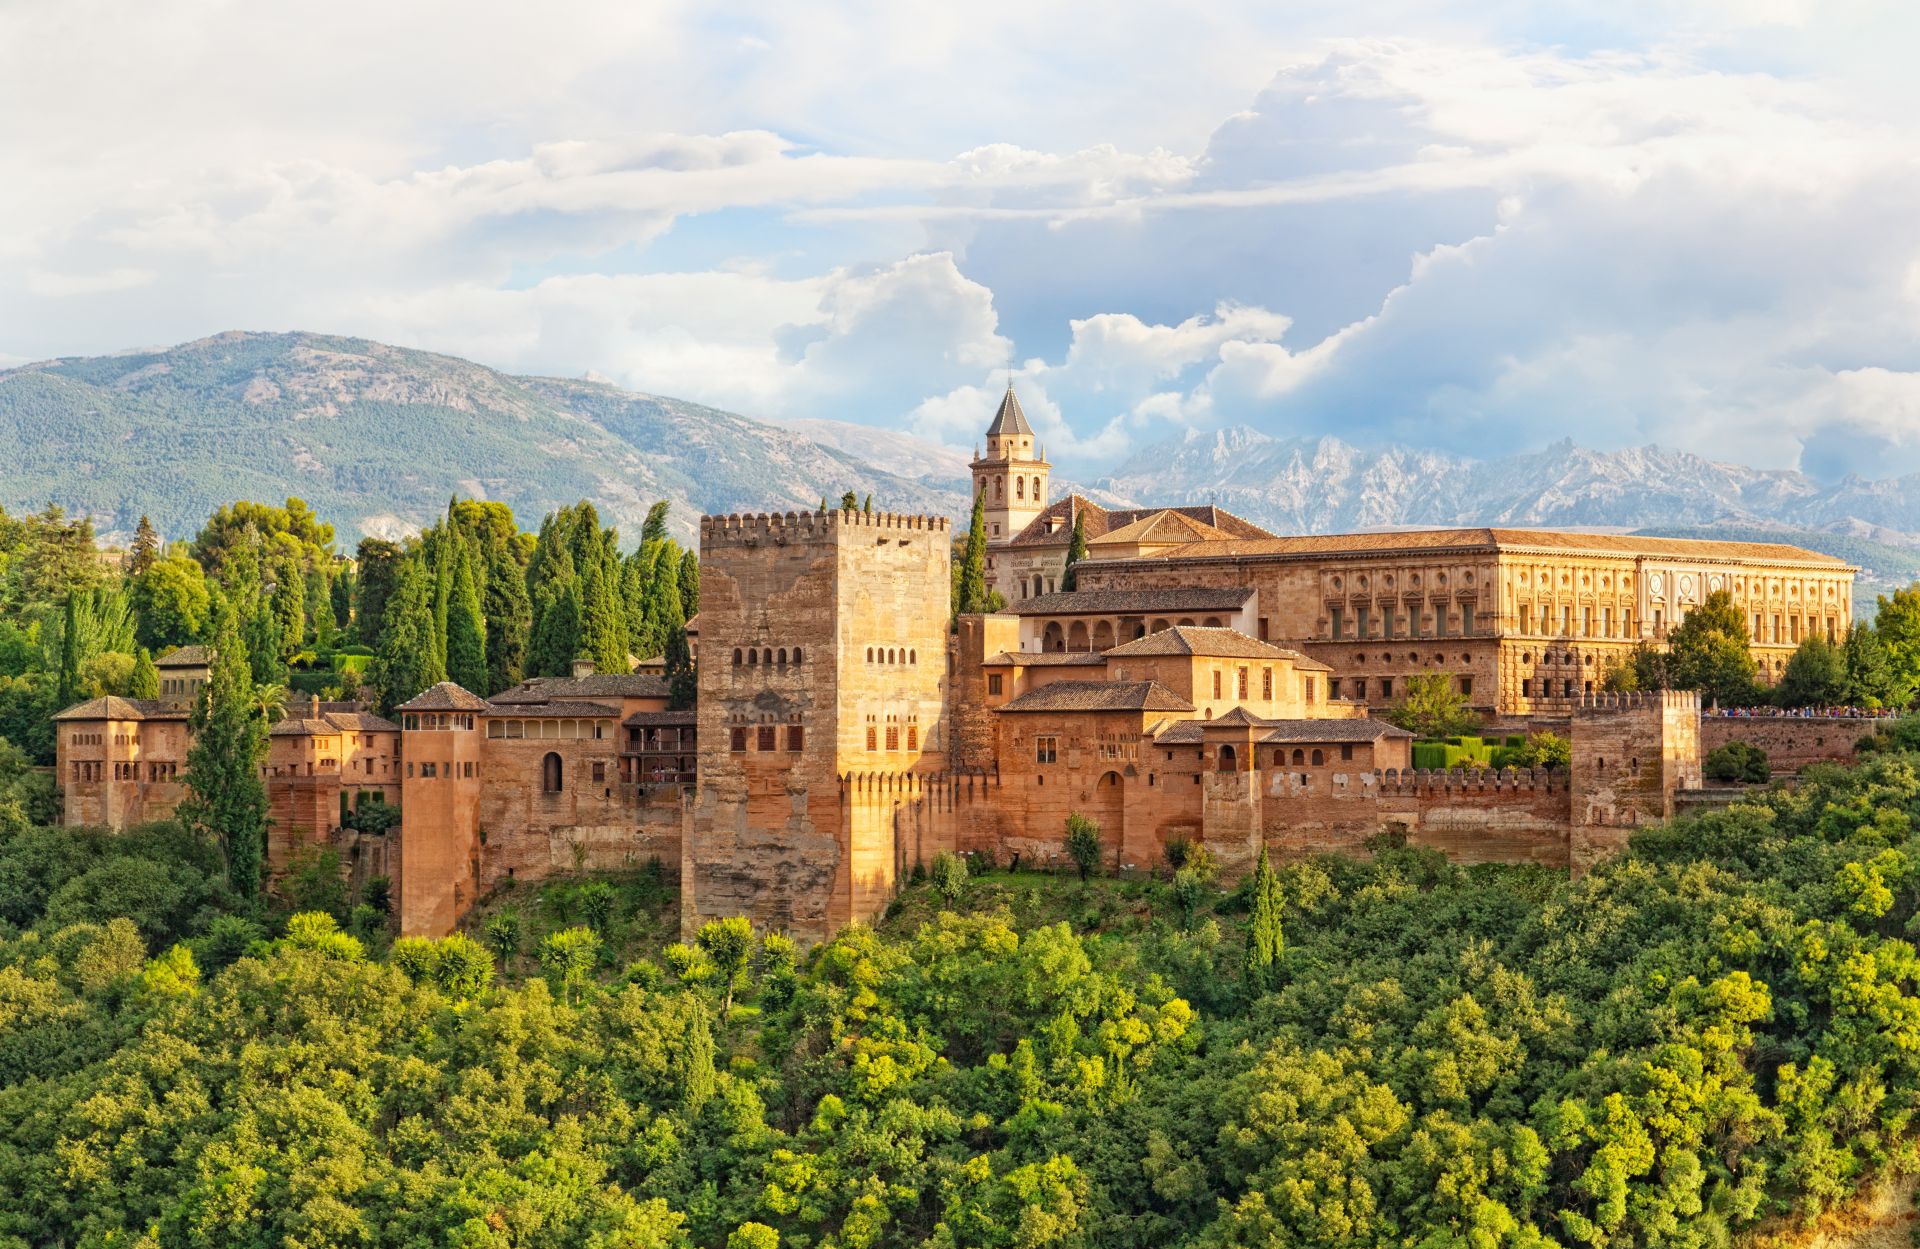 antica fortezza araba di Alhambra, Granada, Spagna